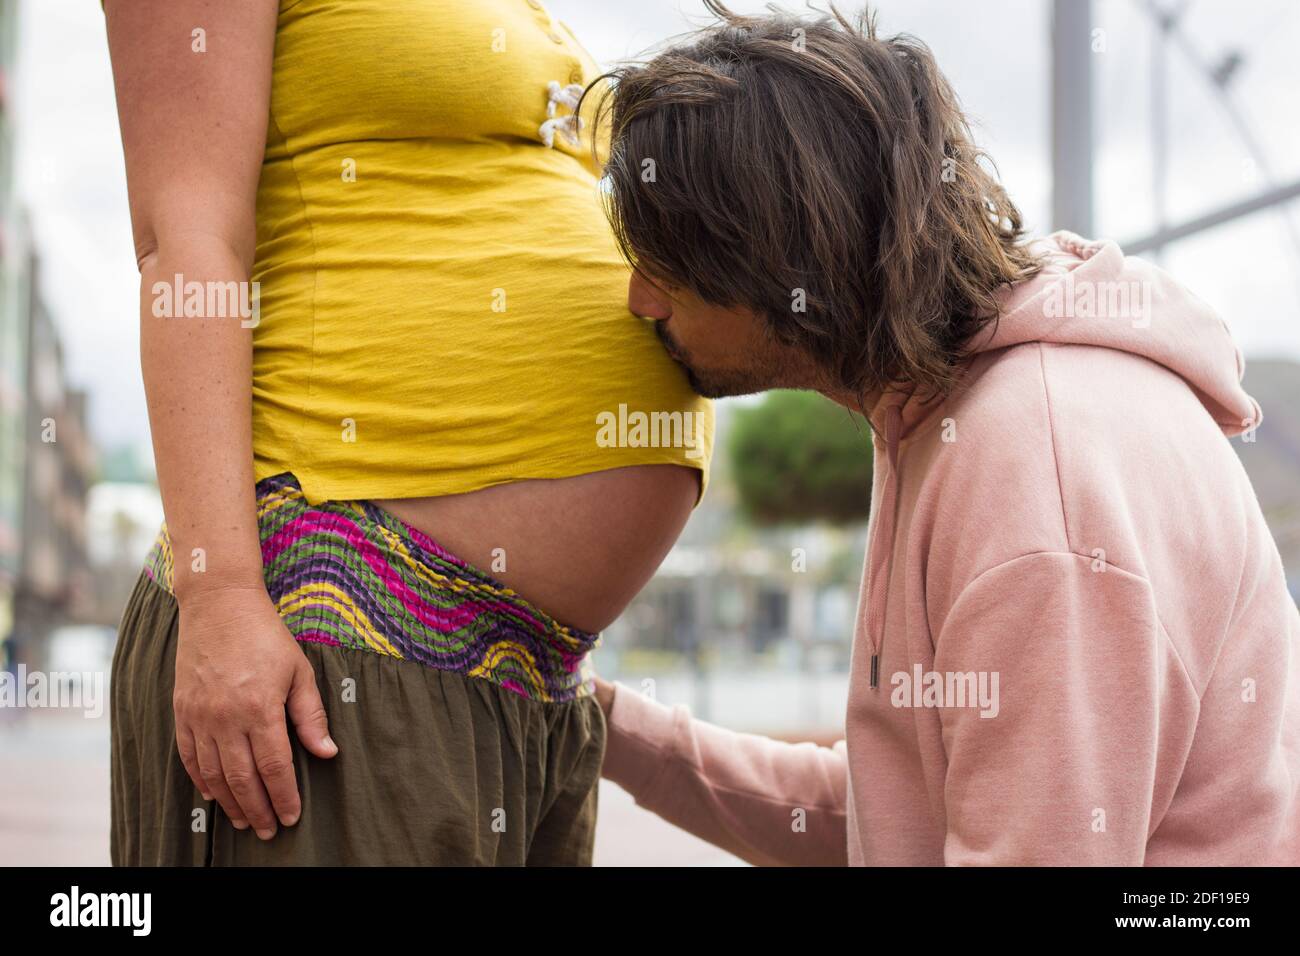 Un jeune papa aux cheveux longs embrasse le grand ventre de sa mère sur une chemise jaune. Un couple enthousiaste attend bébé. Amour affection, nouvelle vie, concept de parentalité Banque D'Images